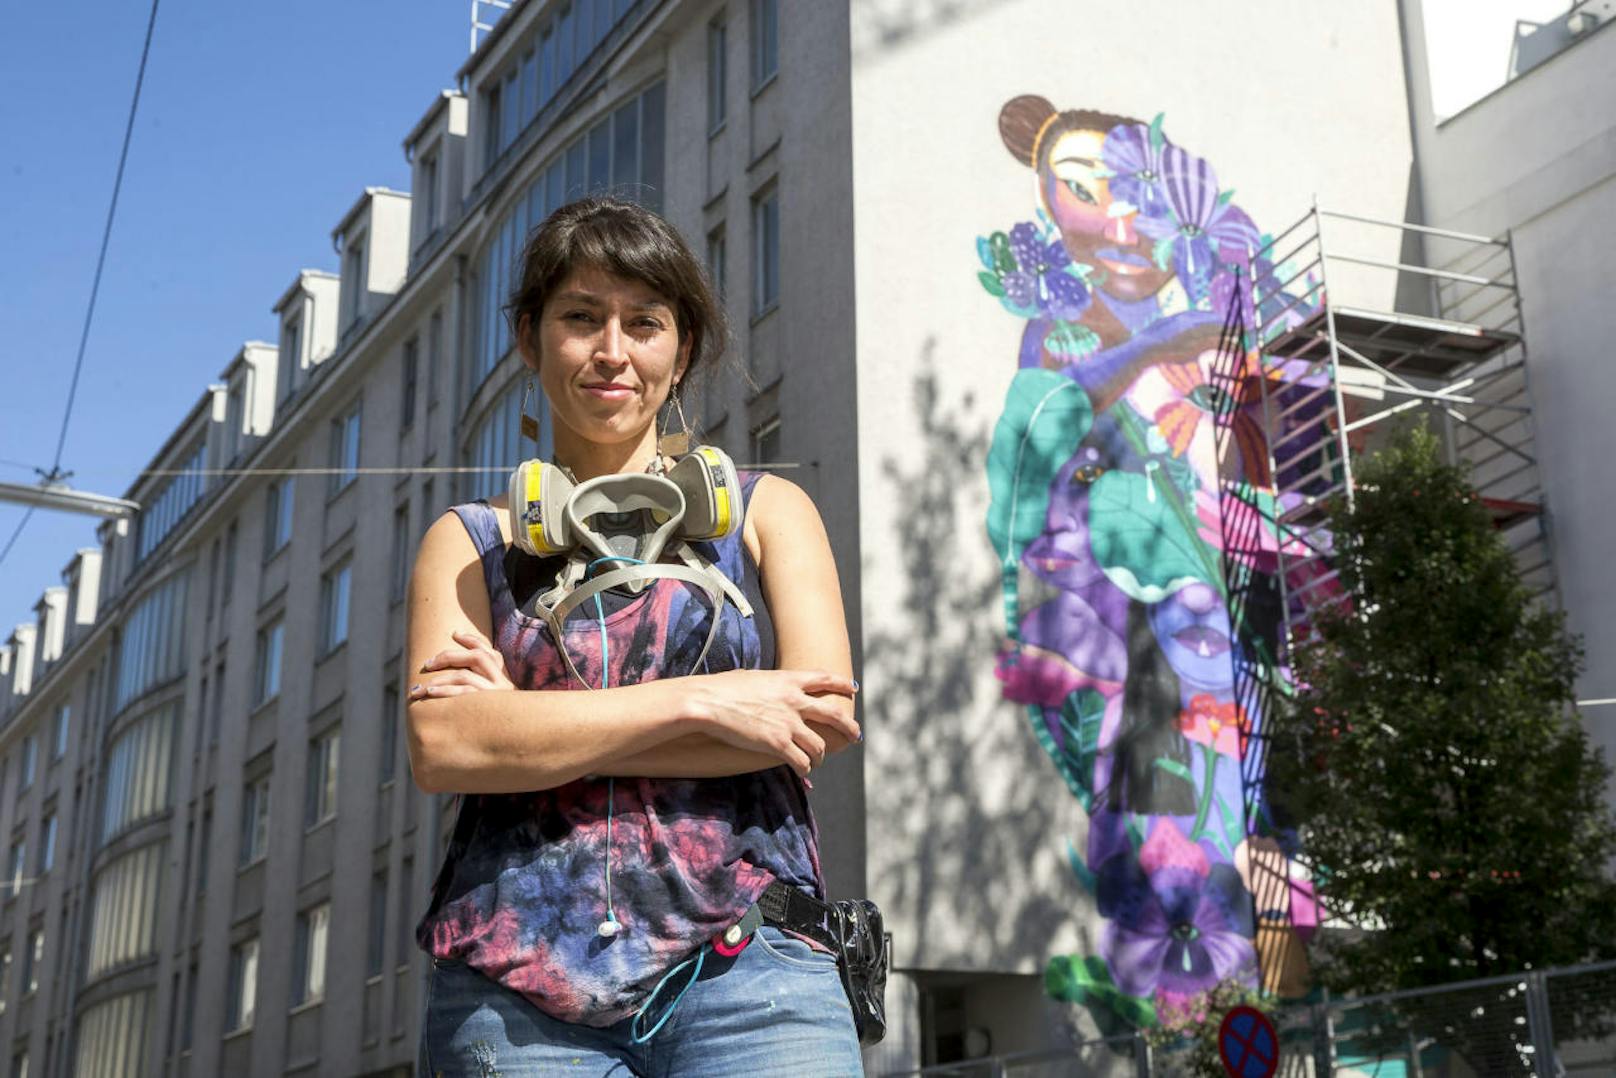 Künstlerin Anis kam extra aus Chile nach Wien - um eine Woche lang an dem 11 Meter hohen Graffiti zu arbeiten.